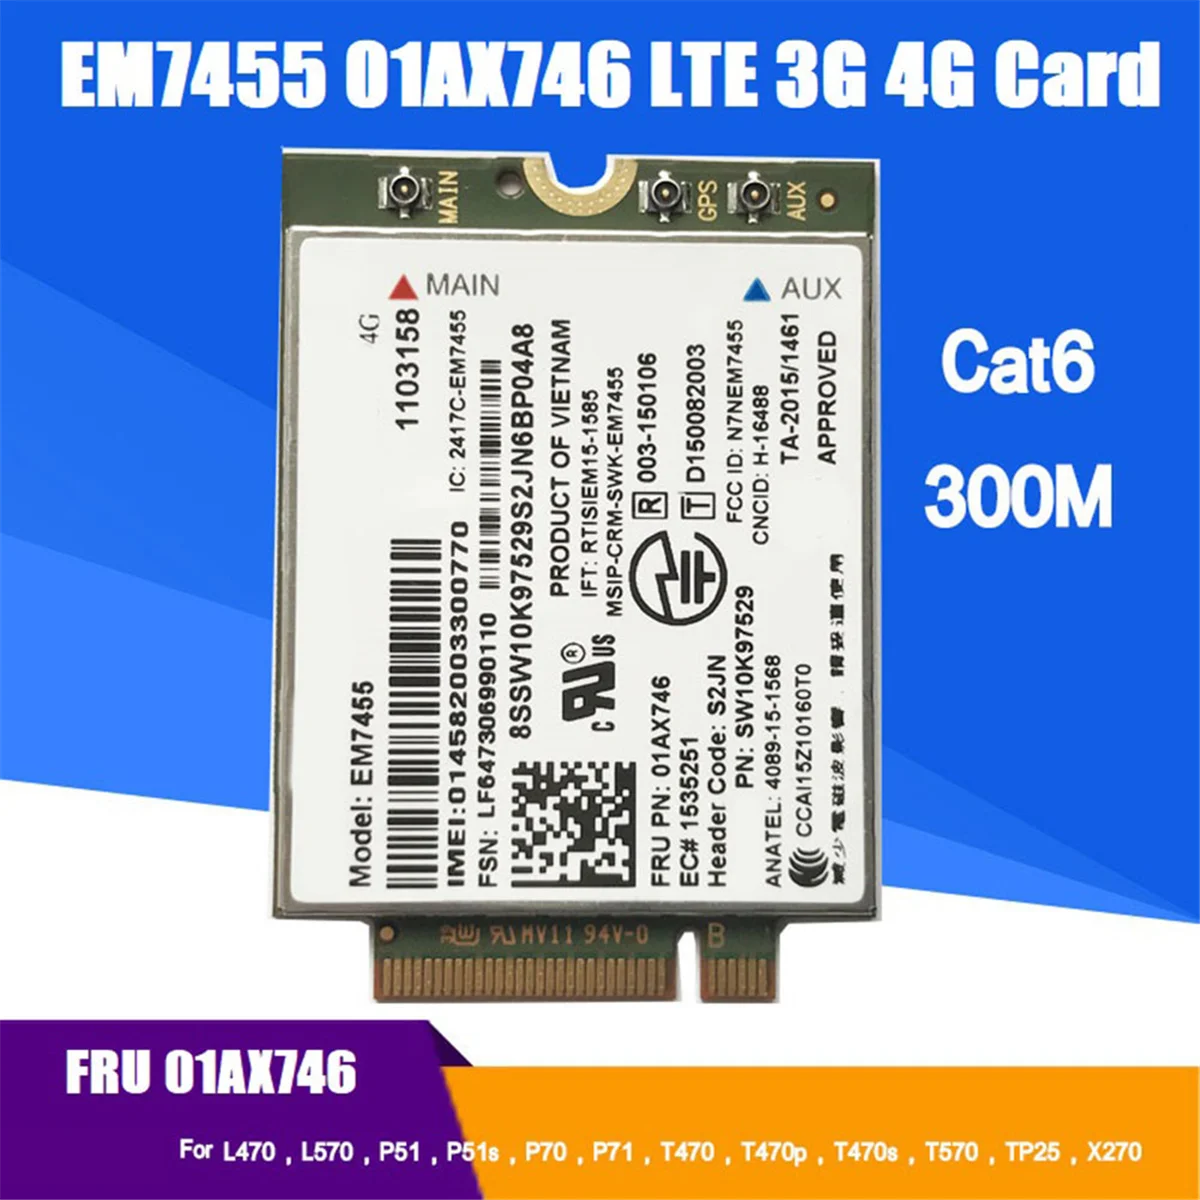 EM7455 01AX746 LTE 3G 4G kortelė+Antena Thinkpad X1 Carbon 5Th Gen X270 T470 T470S T470P T570 L570 L470 P51 P71